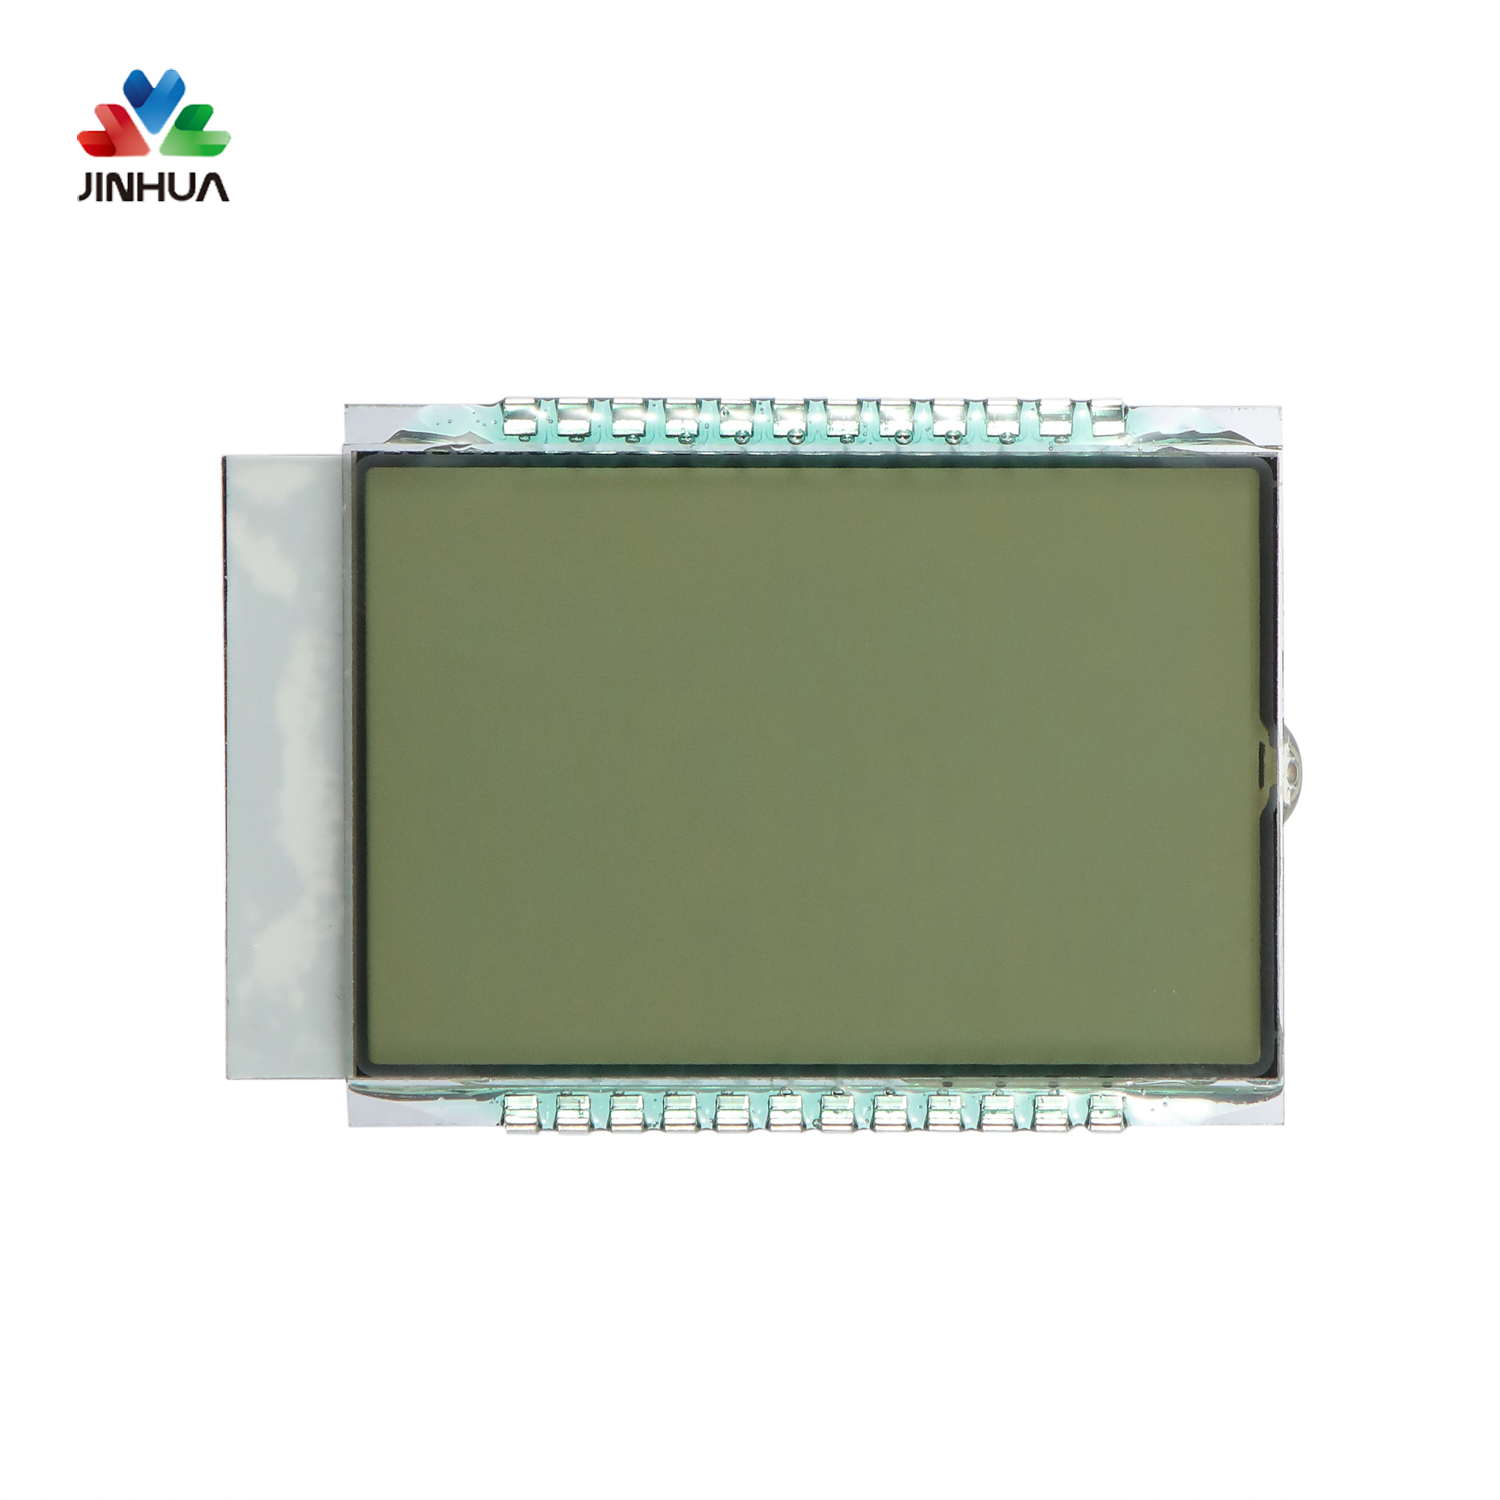 Pines Pantalla LCD de segmento HTN transmisivo positivo con retroiluminación